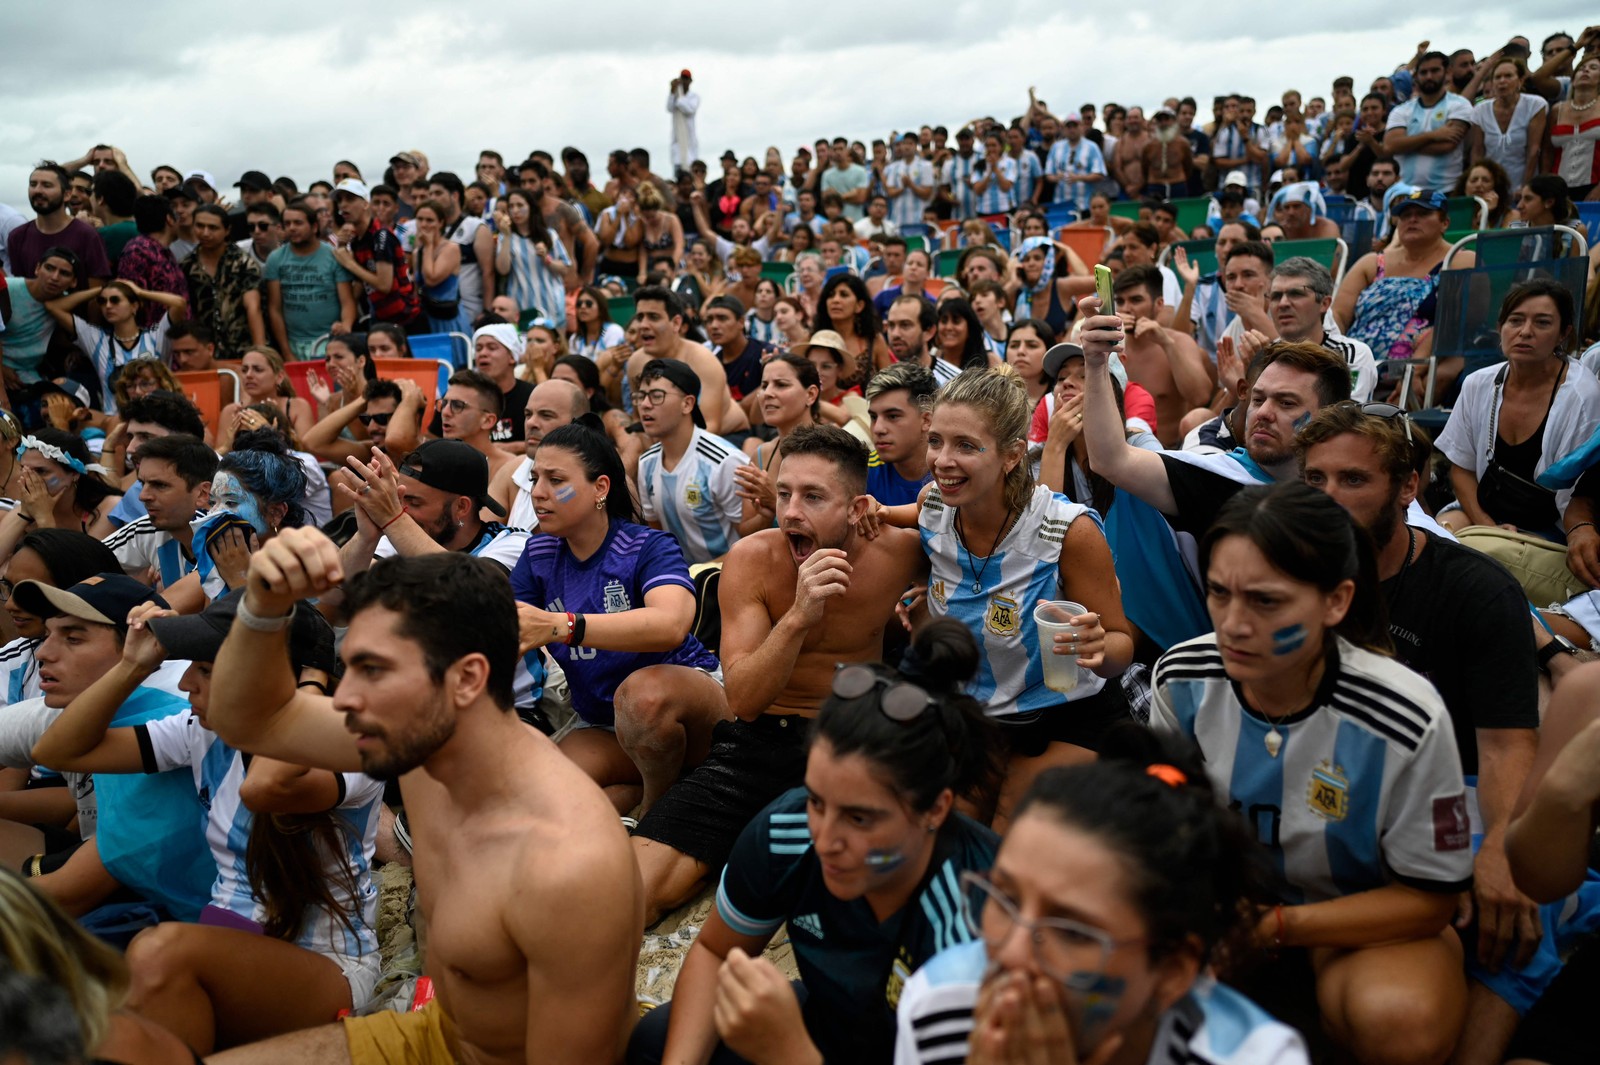 Torcedores da Argentina durante a transmissão ao vivo da partida na praia de Copacabana, no Rio de Janeiro — Foto: MAURO PIMENTEL/AFP